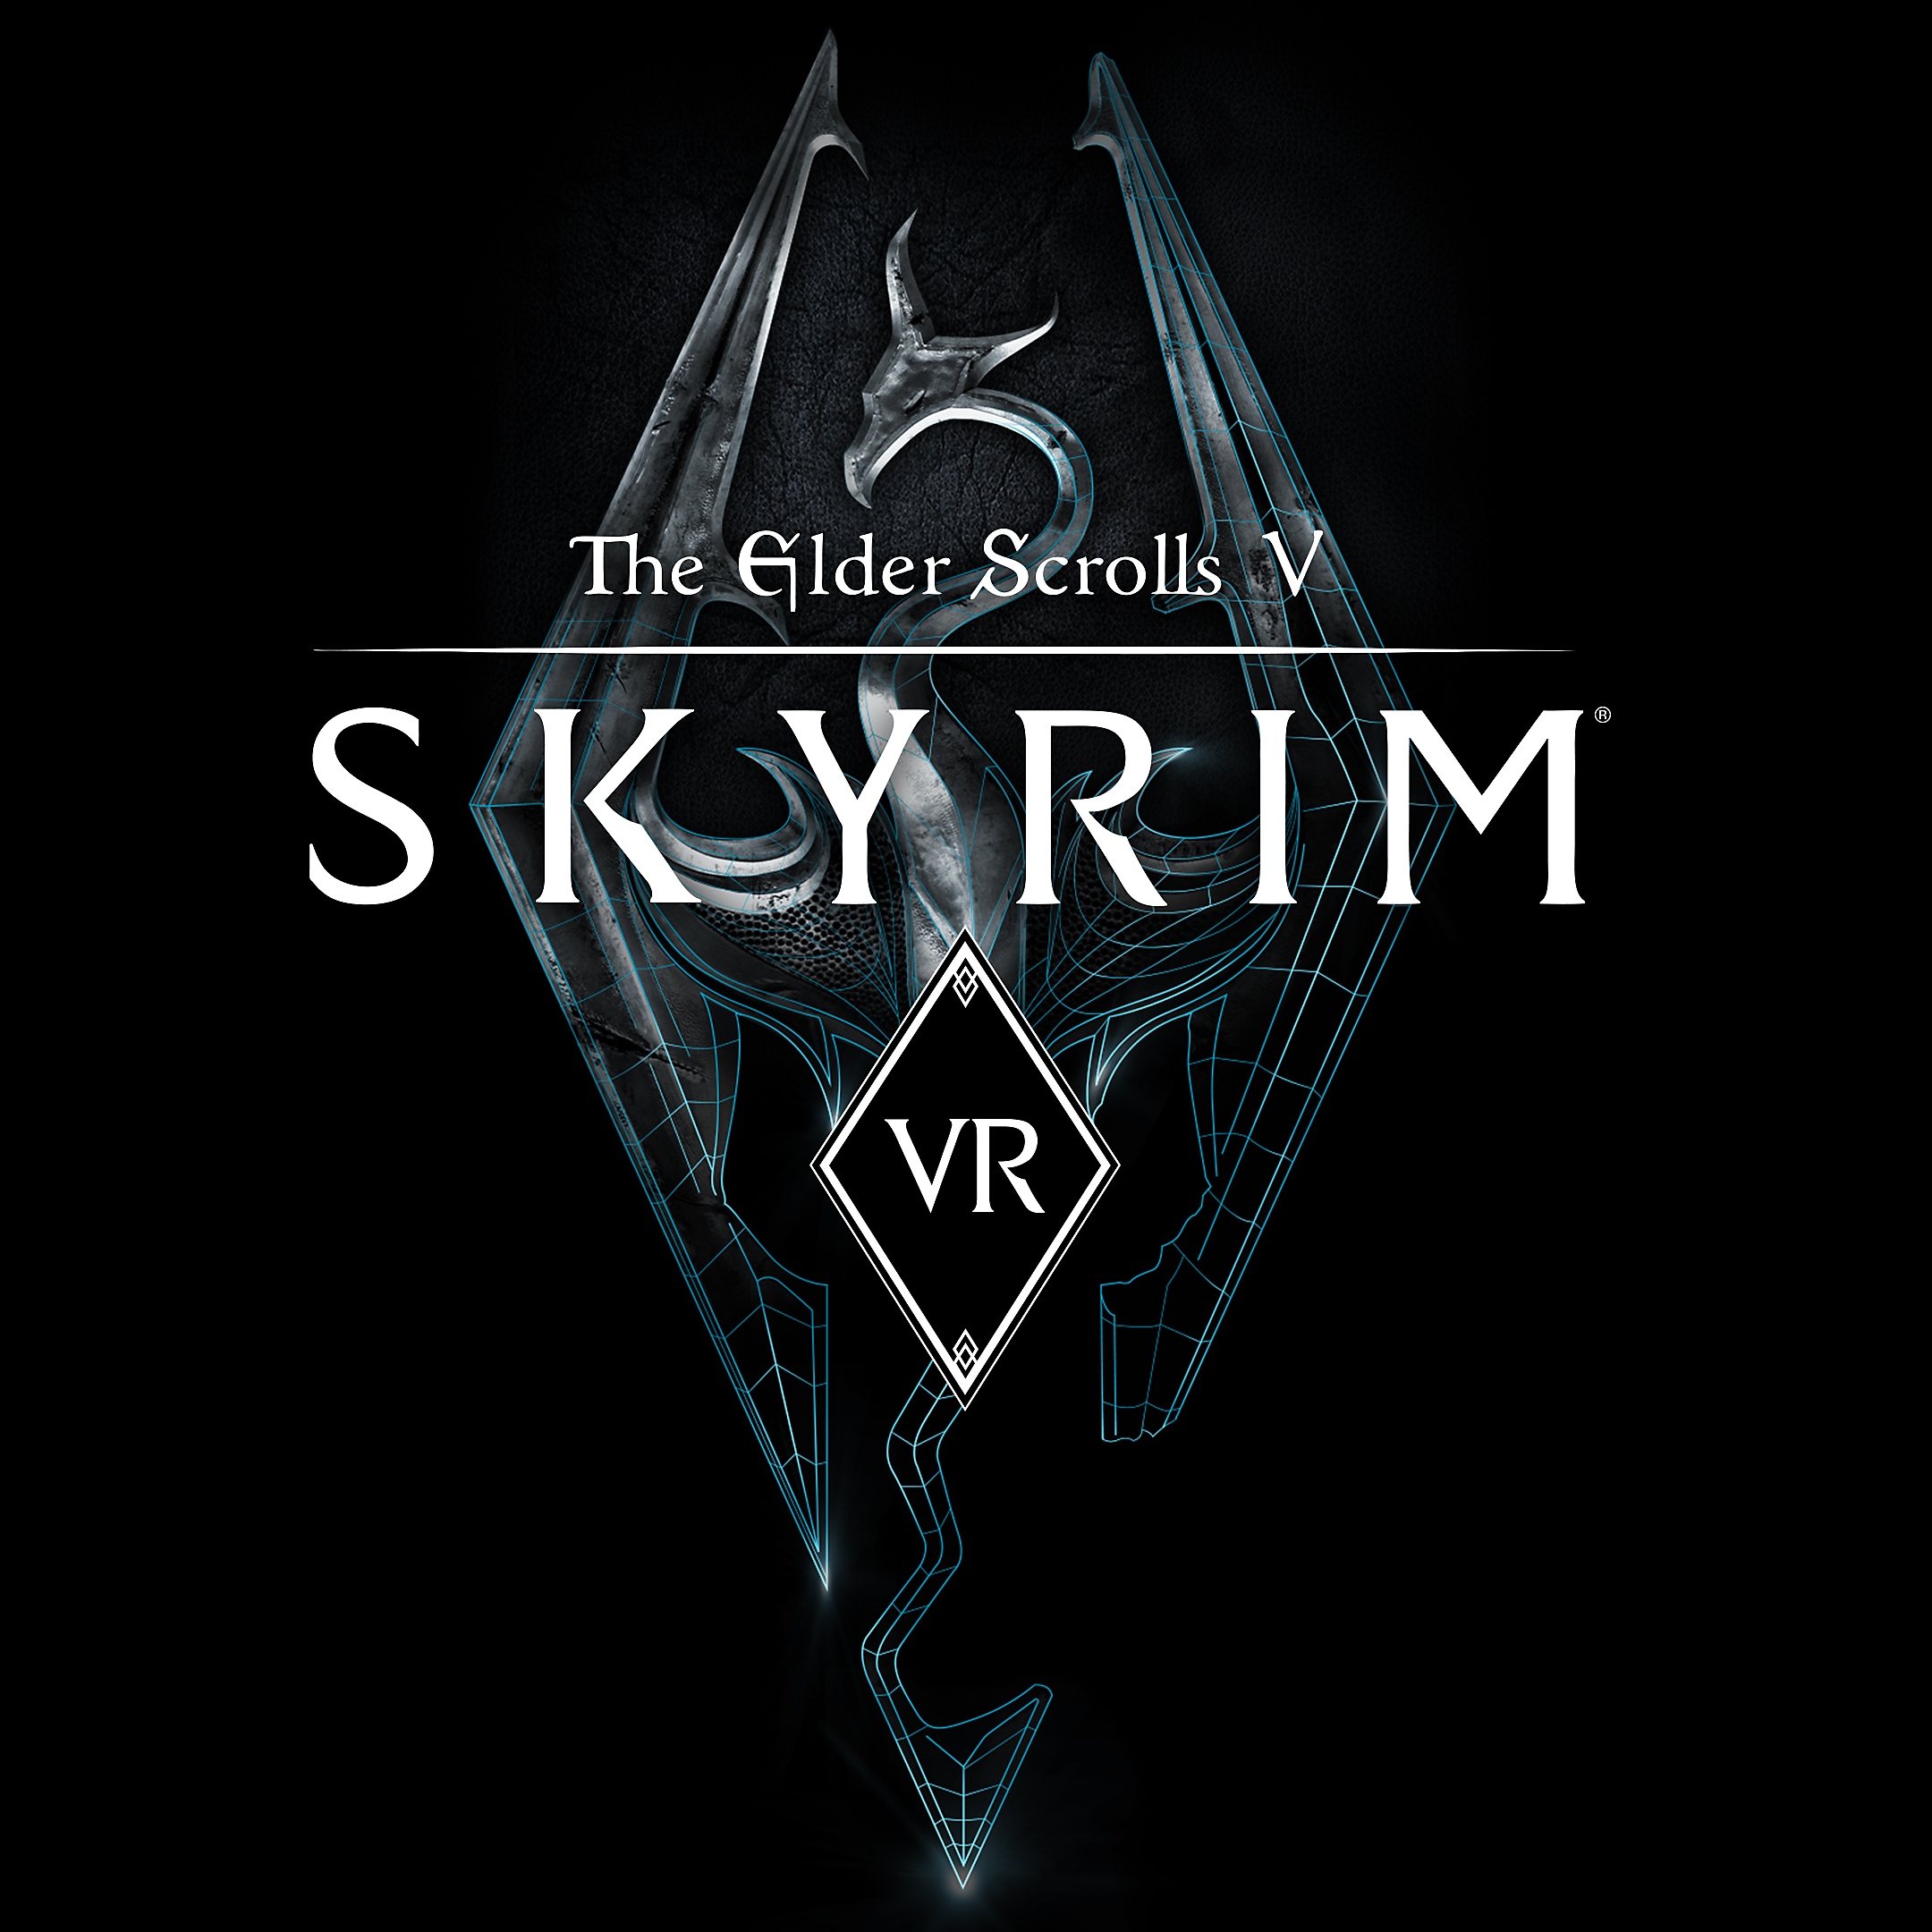 The Elder Scrolls V: Skyrim VR – pakkebilde